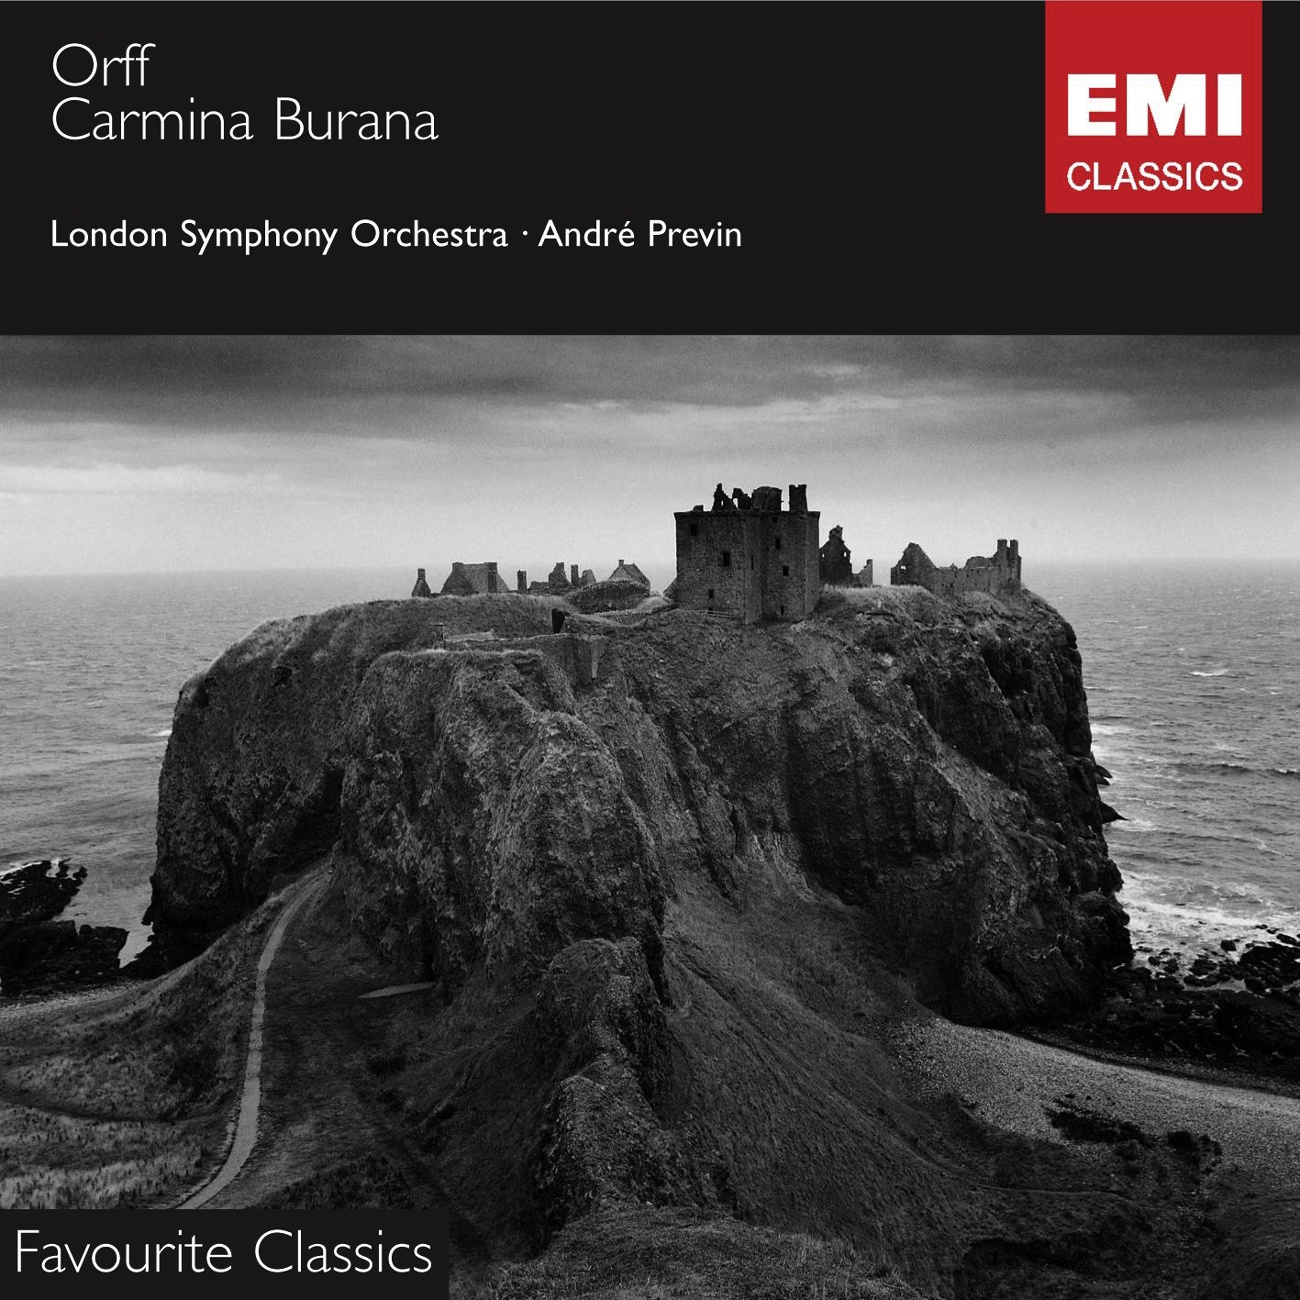 Carmina Burana - Cantiones profanae (1997 Digital Remaster), II - In taberna: No. 12 - Olim lacus colueram